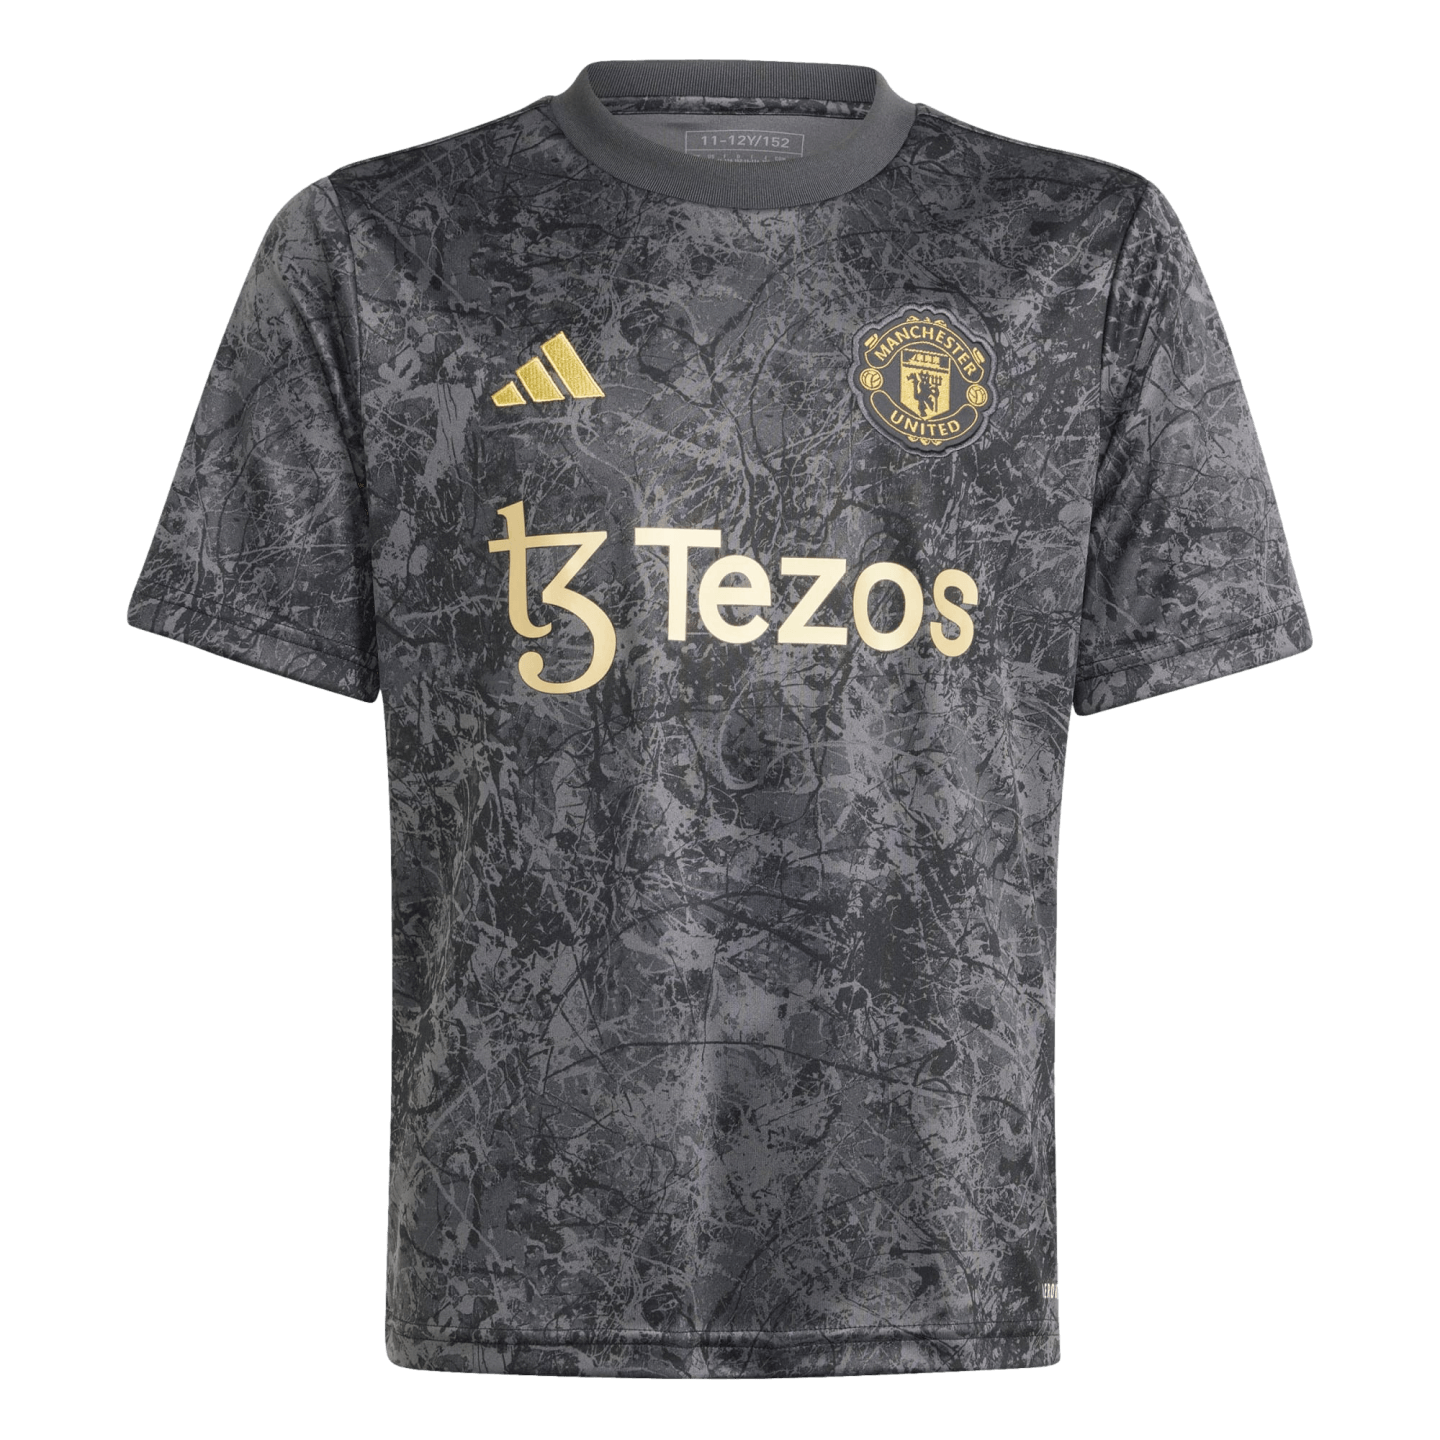 Camiseta de prepartido juvenil Adidas Manchester United Stone Roses